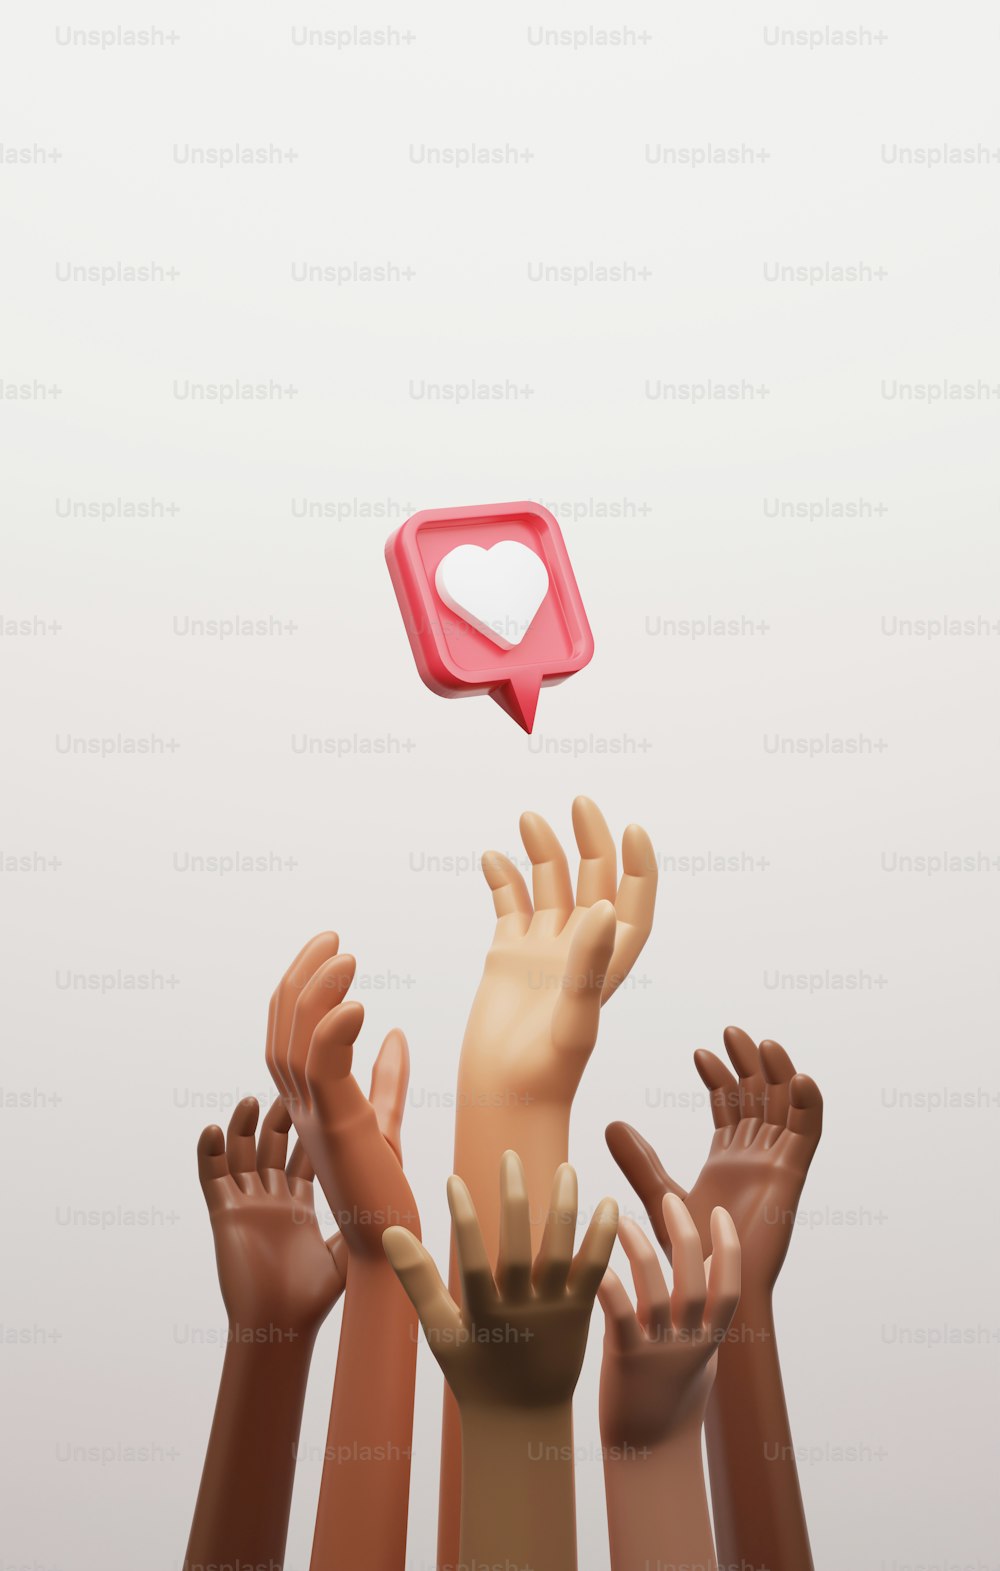 Grupo multiétnico llega al icono del corazón en el pin rojo
Competencia de fama y aceptación en las redes sociales. Ilustración de renderizado 3D.